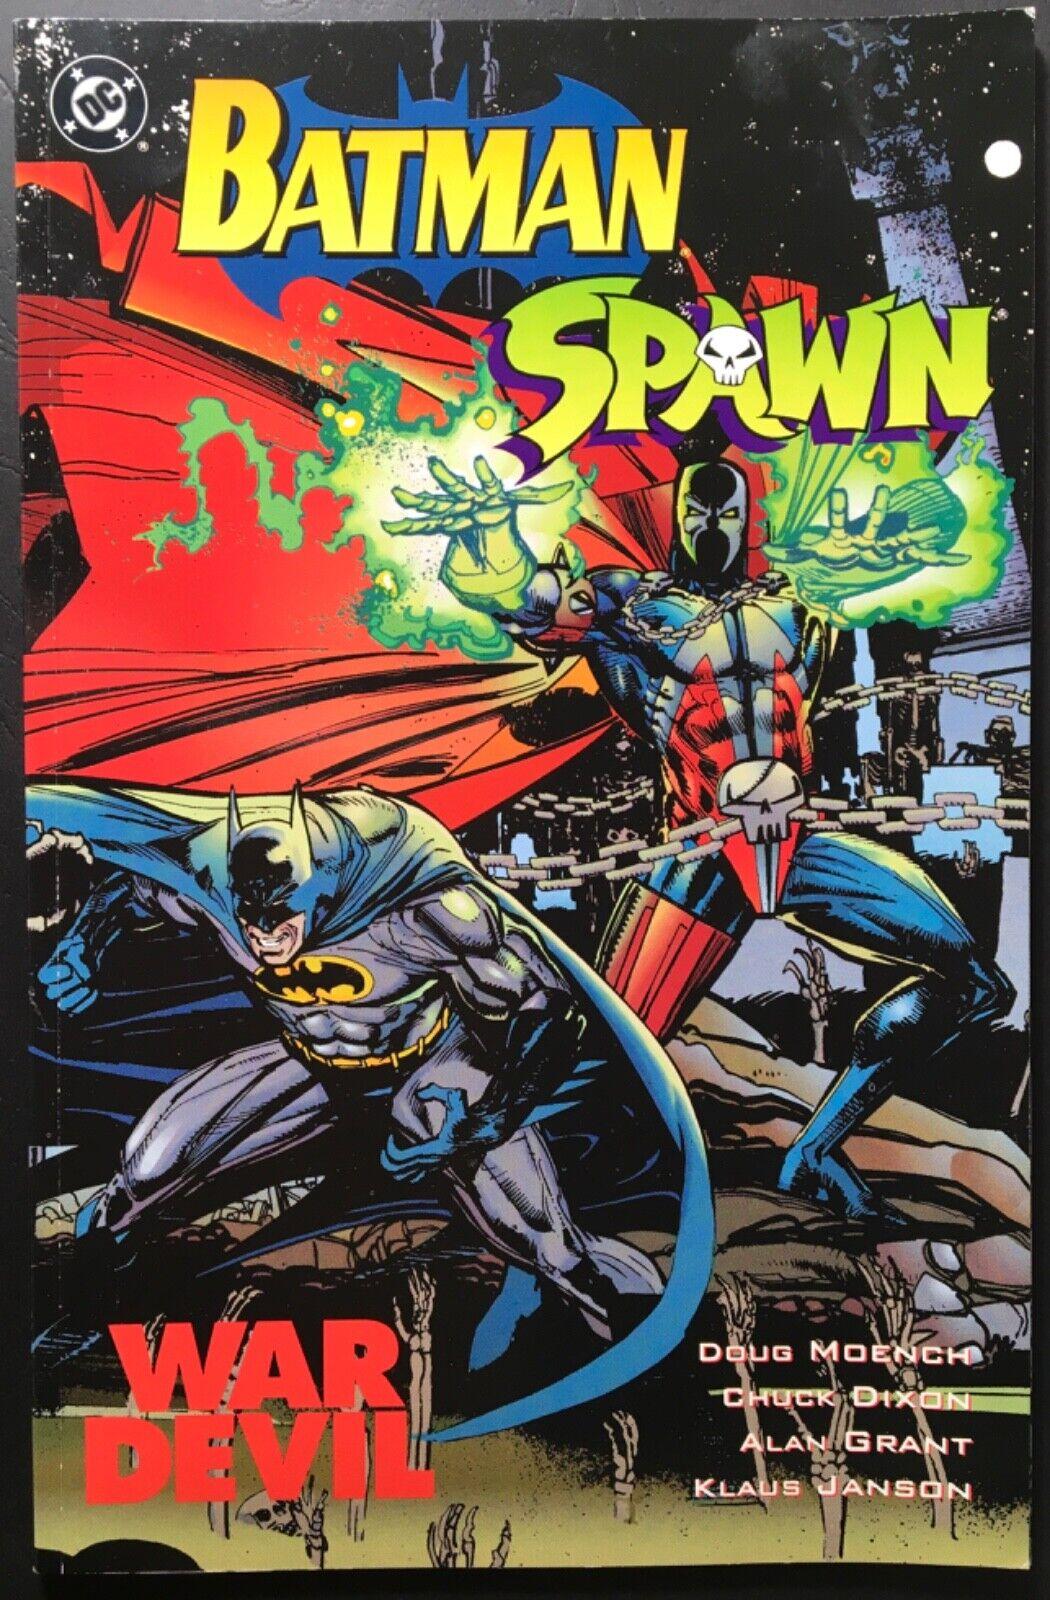 BATMAN/SPAWN - DC COMICS (1994)